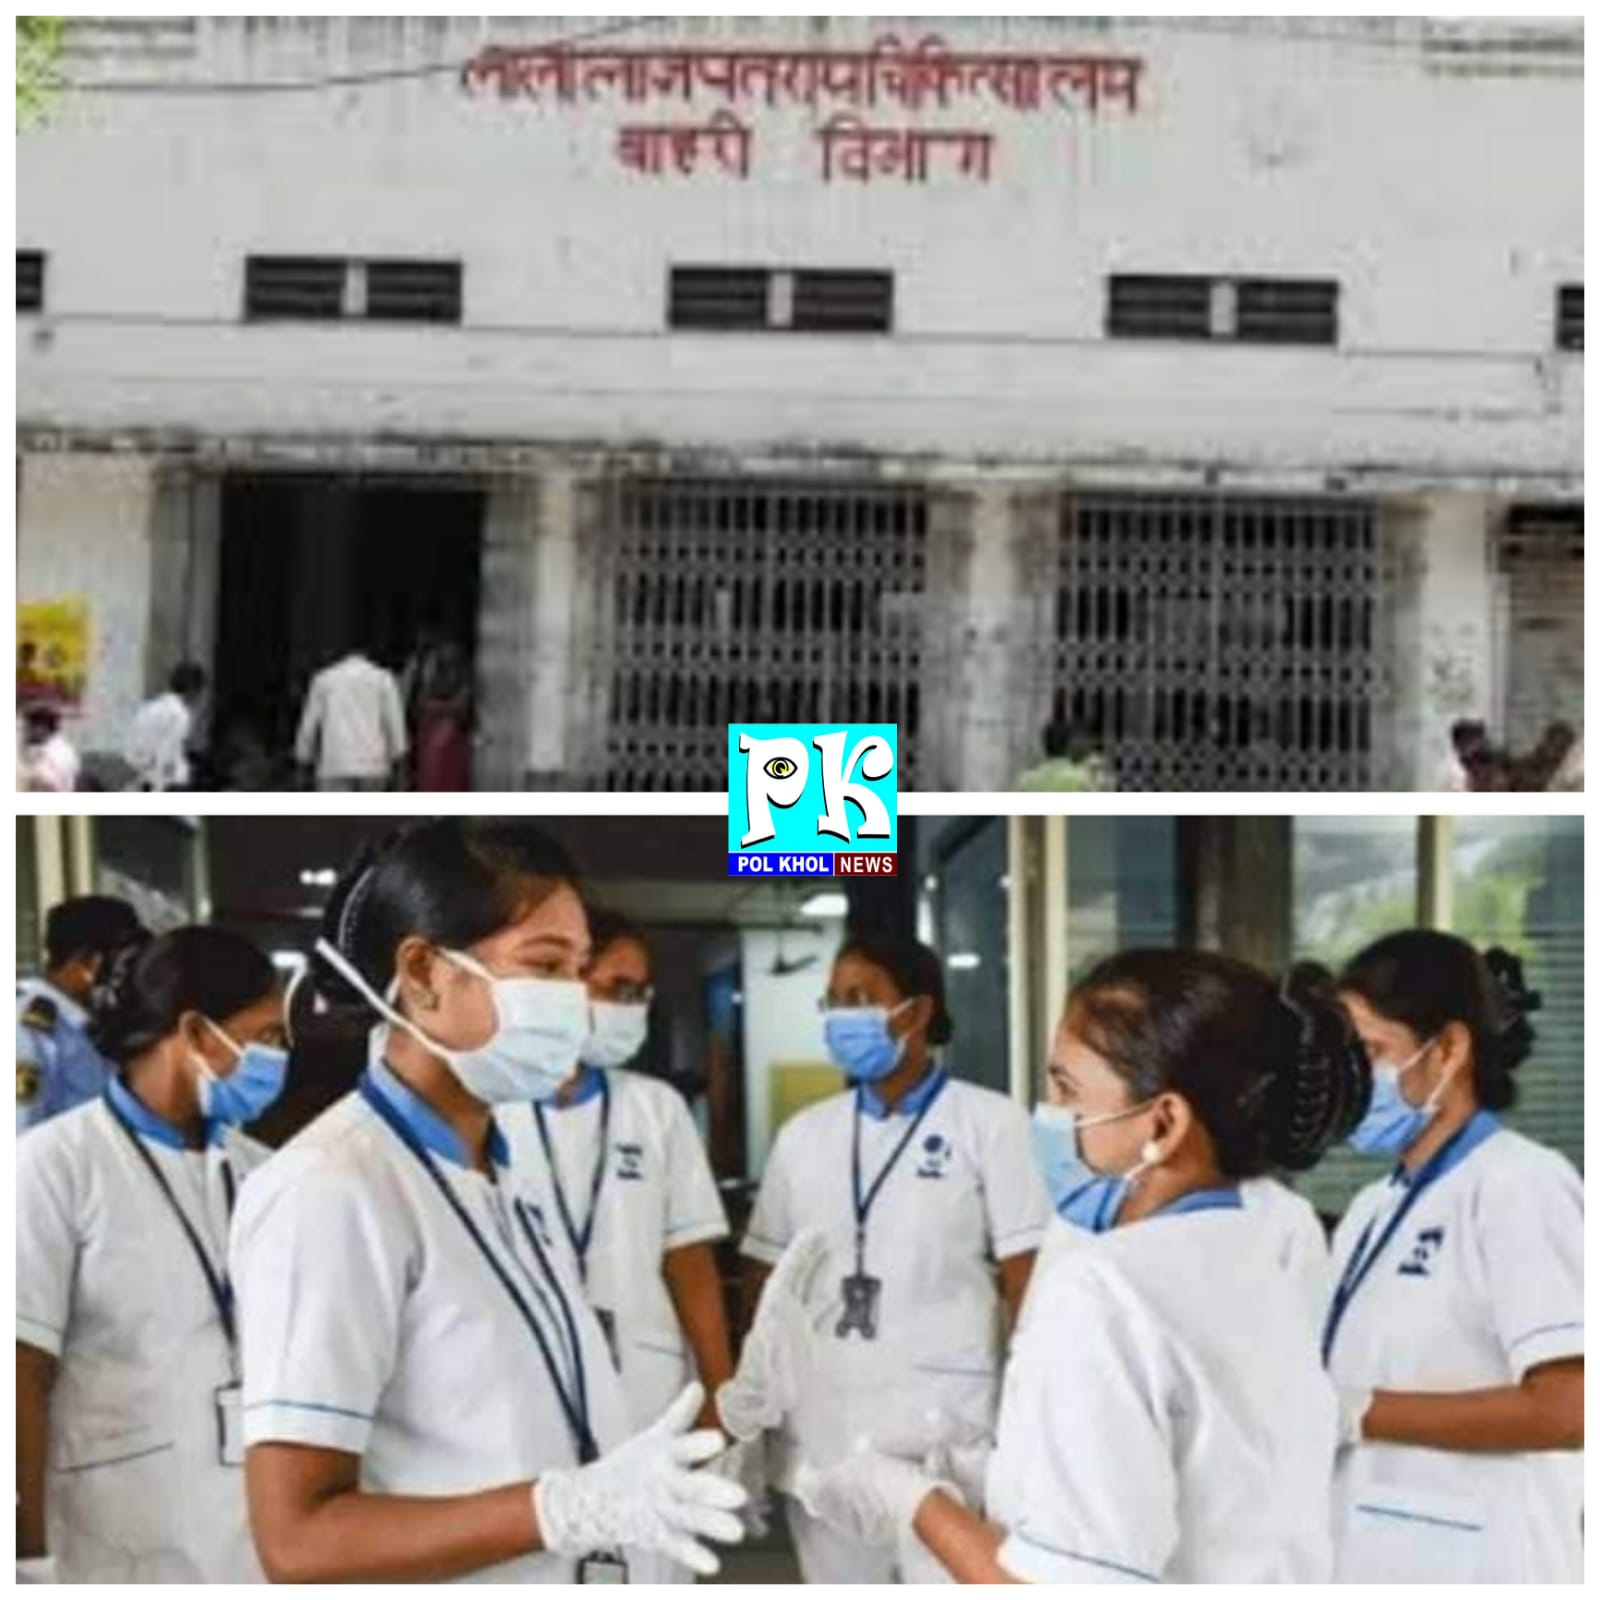 शासन के आदेश से हैलट में 45 नर्सों का ट्रांसफर